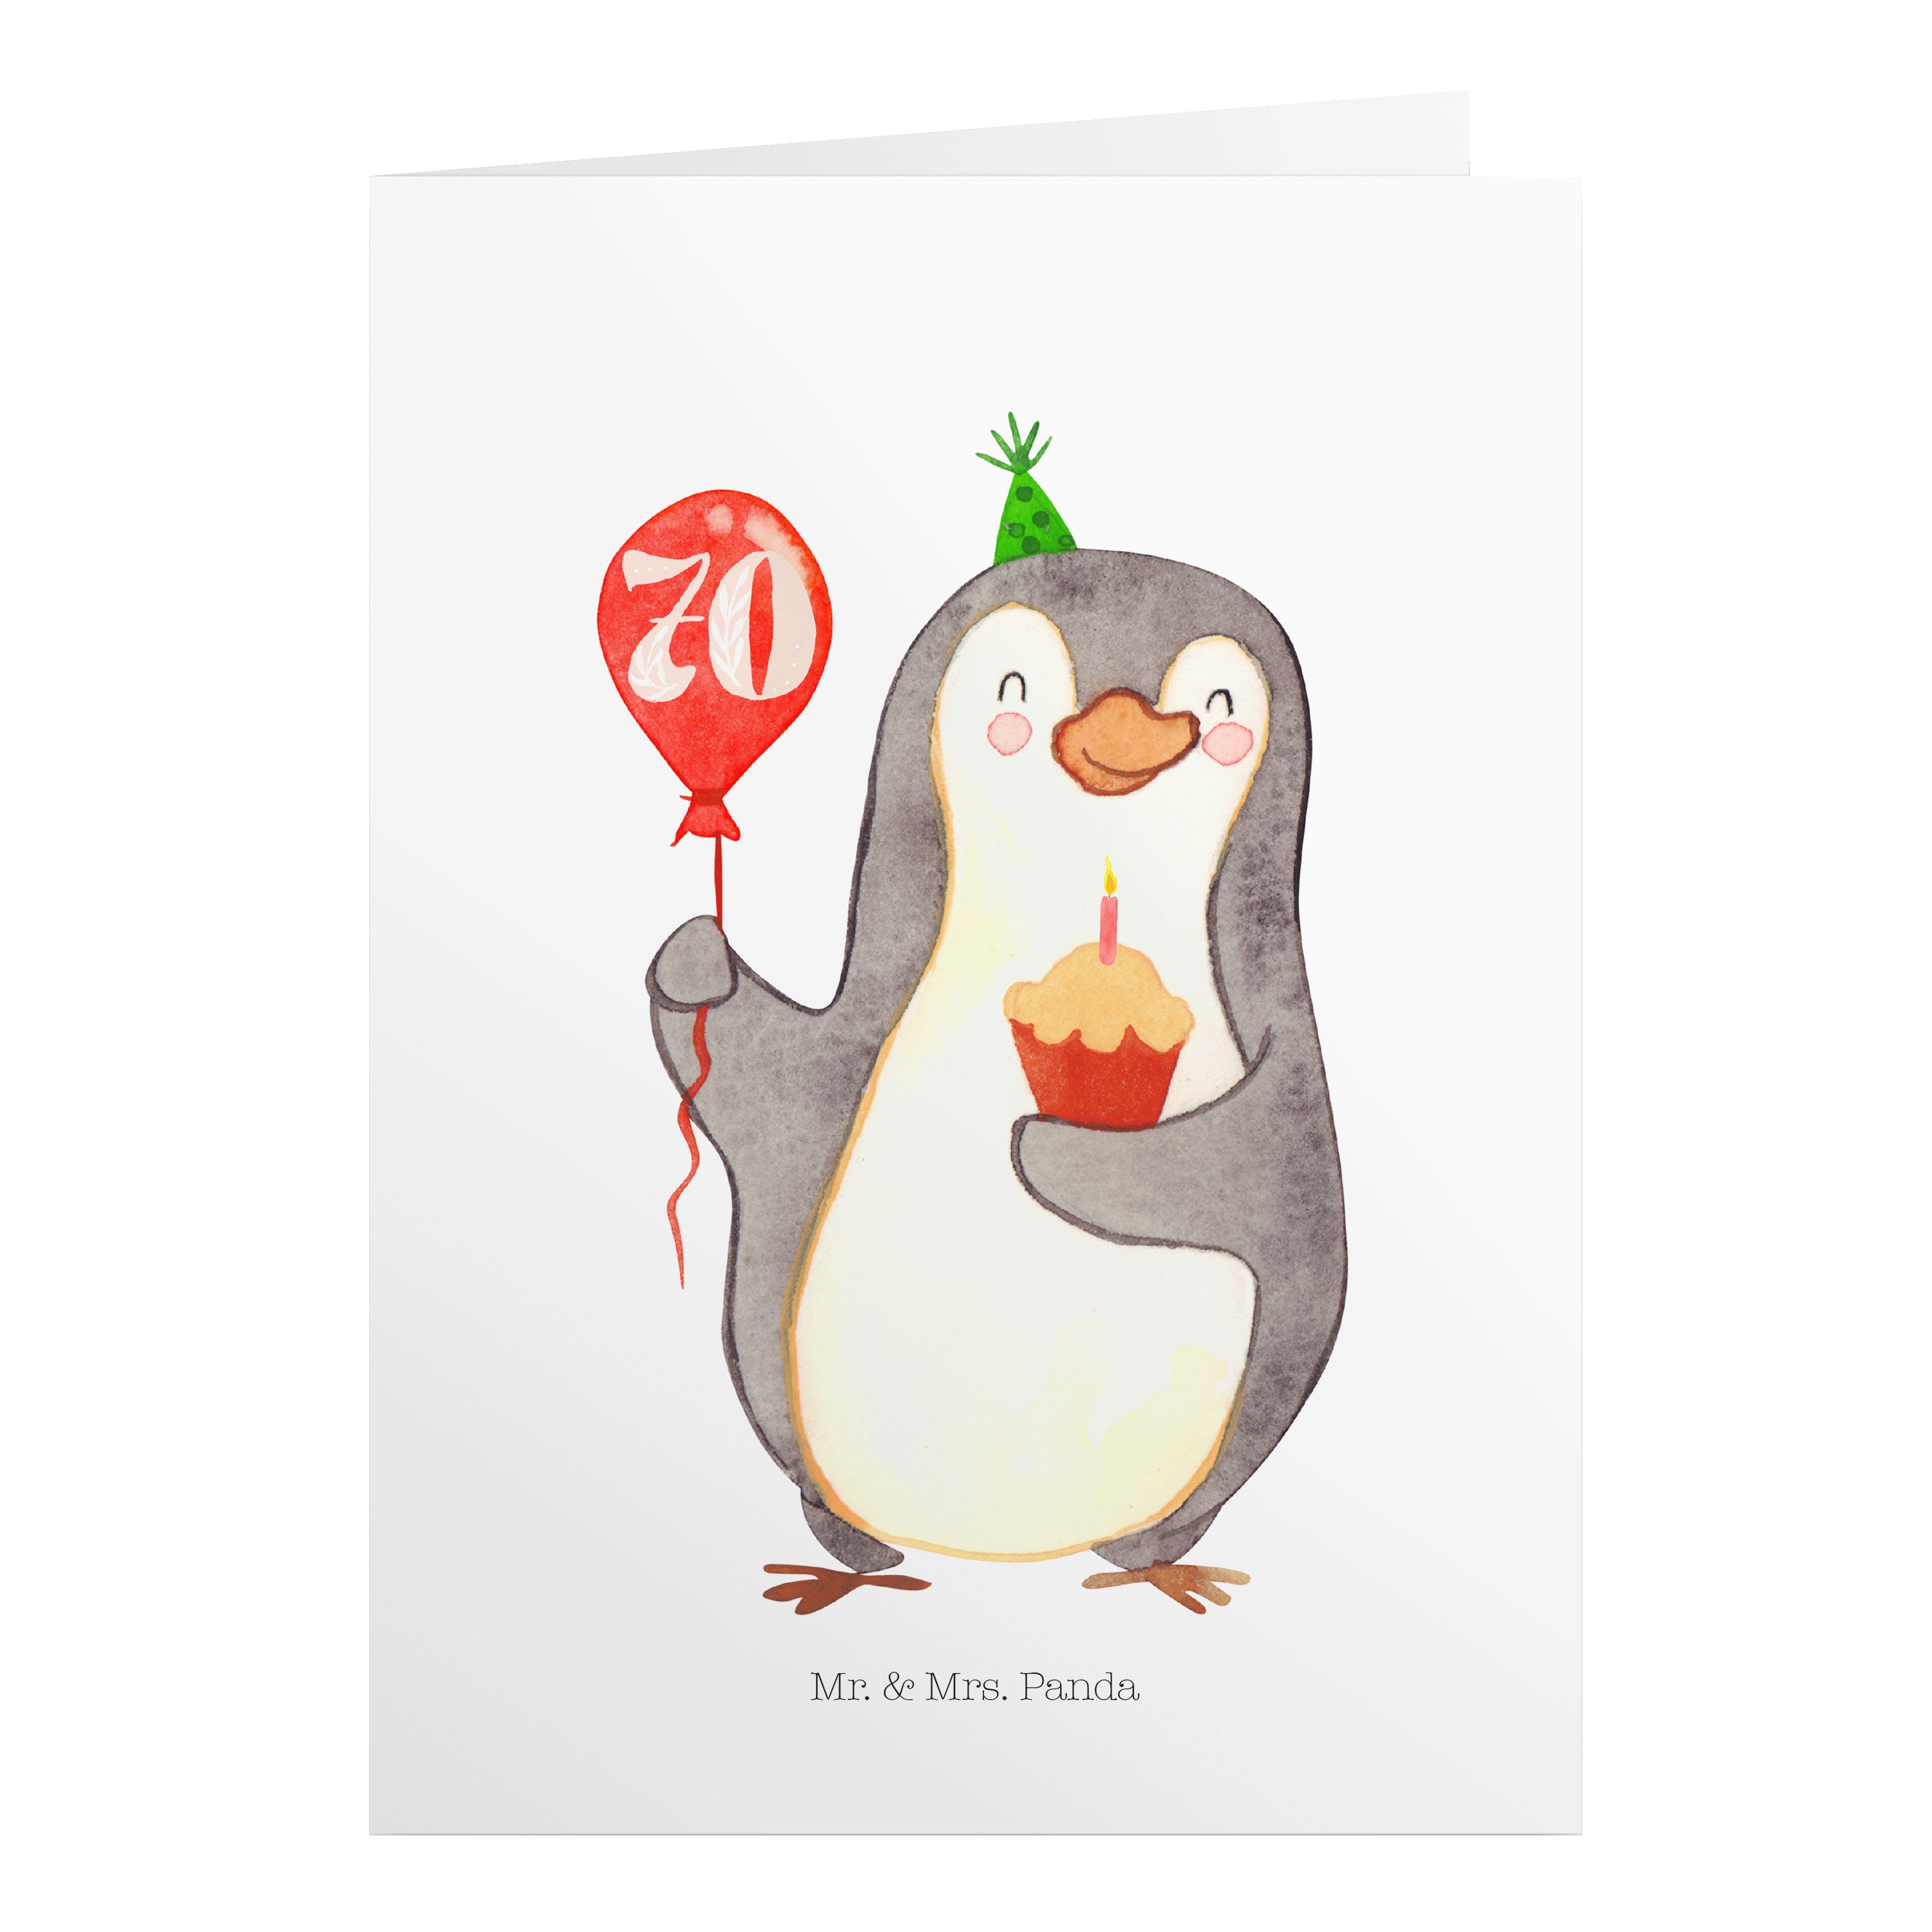 Mr. & Mrs. Panda 70. Weiß Luftballon - Happy Geburtstagskarten - Geschenk, Birthday Pinguin Geburtstag